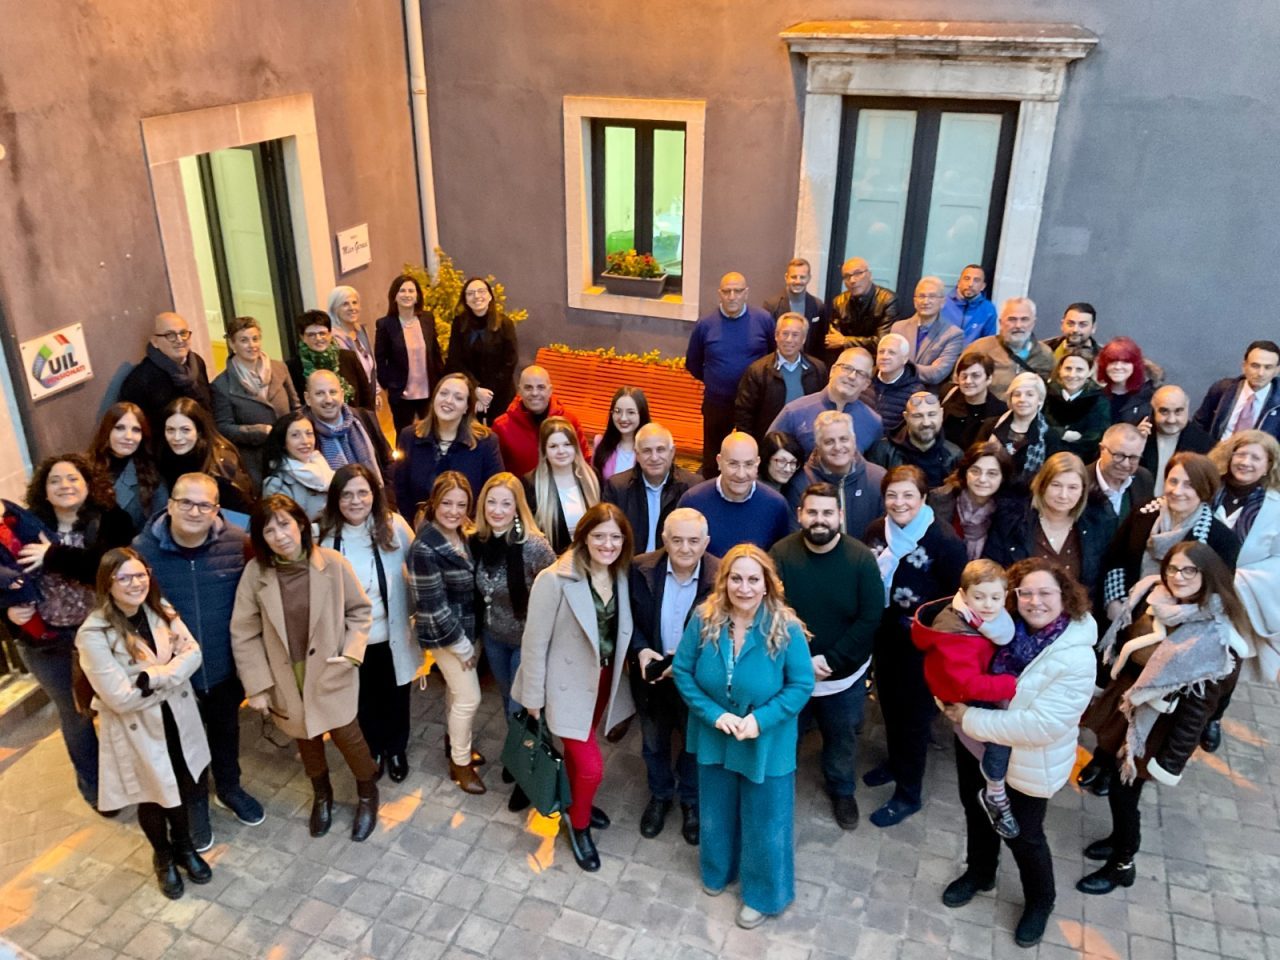 L’impegno della Uil contro la violenza di genere: l’incontro a Catania